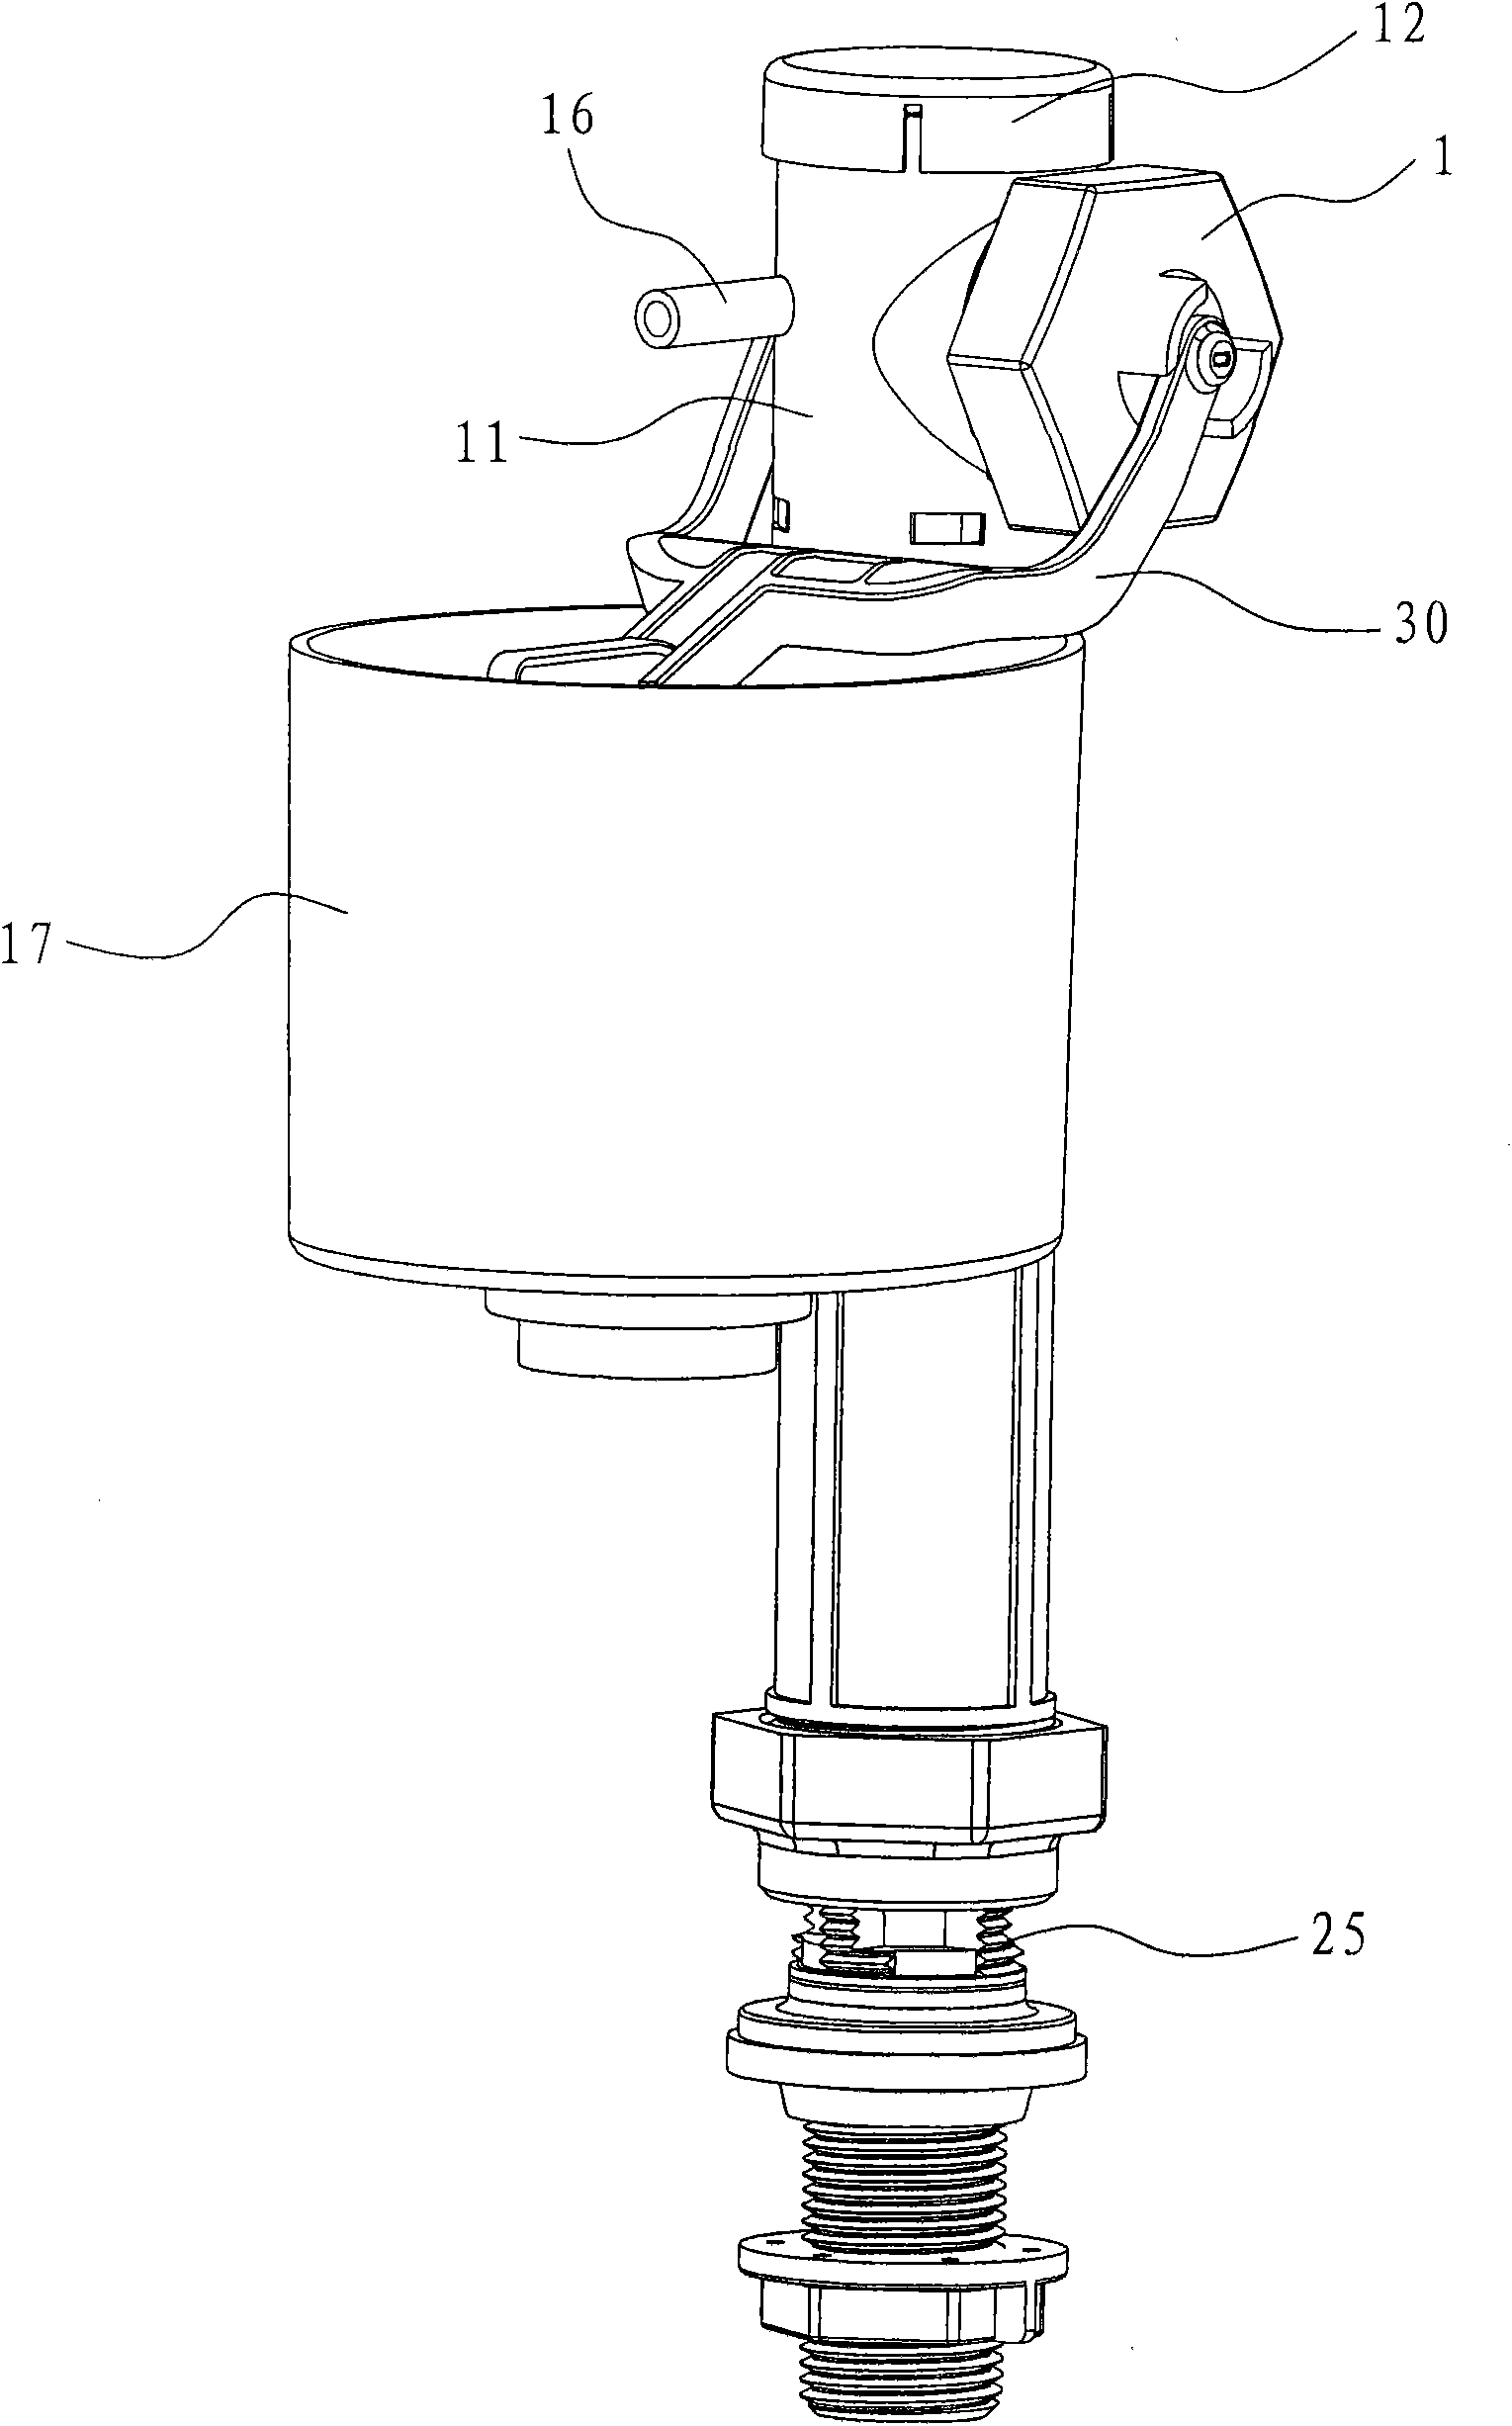 Pedestal pan magnetized water inlet valve